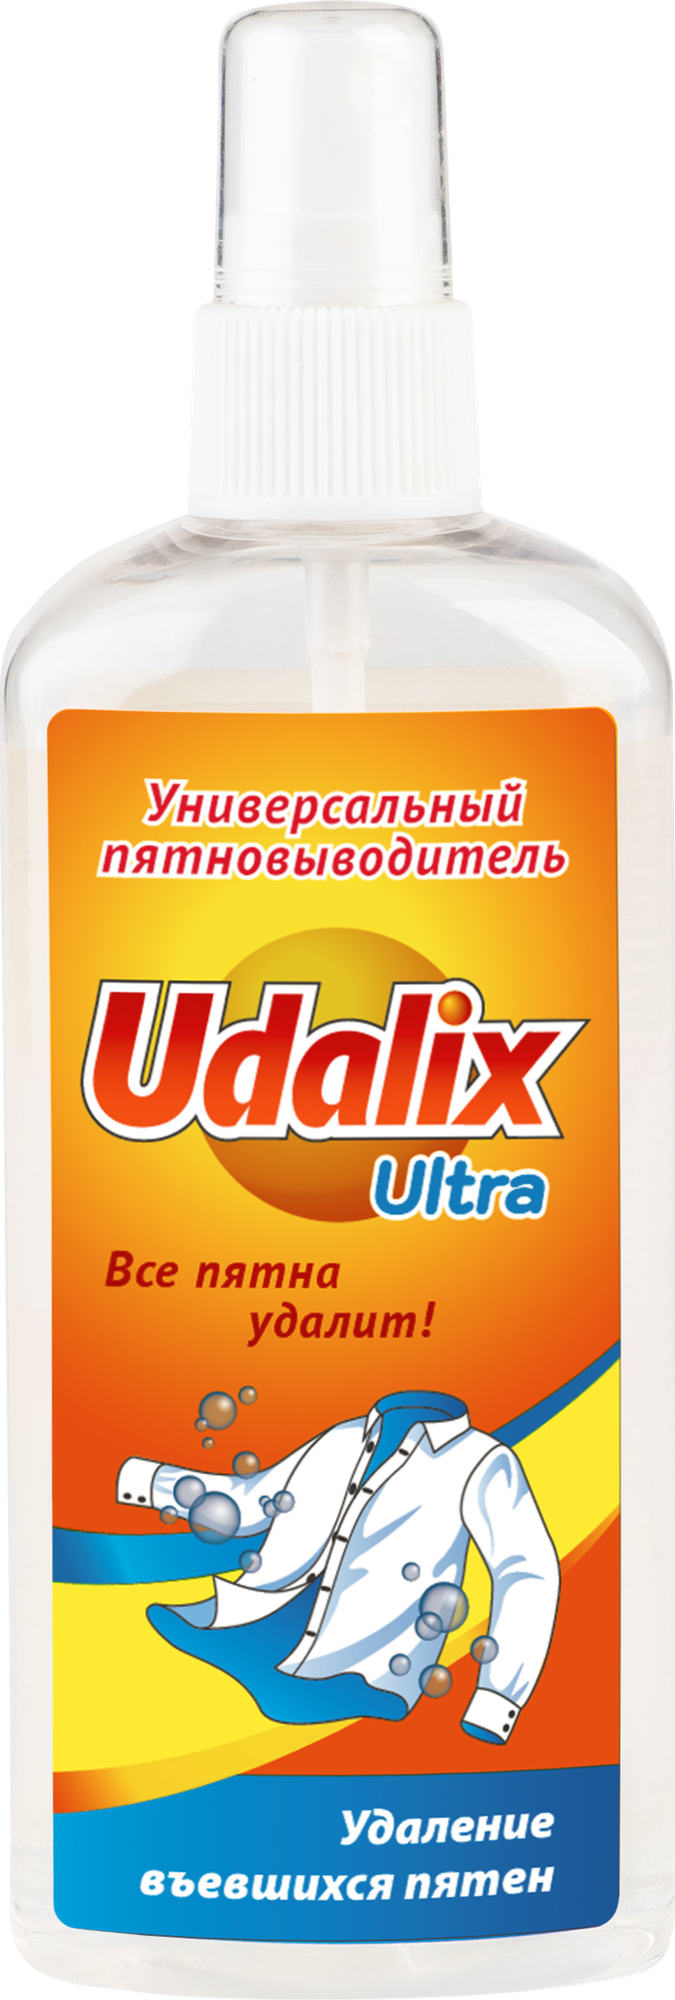 Пятновыводитель UDALIX Ultra 150мл